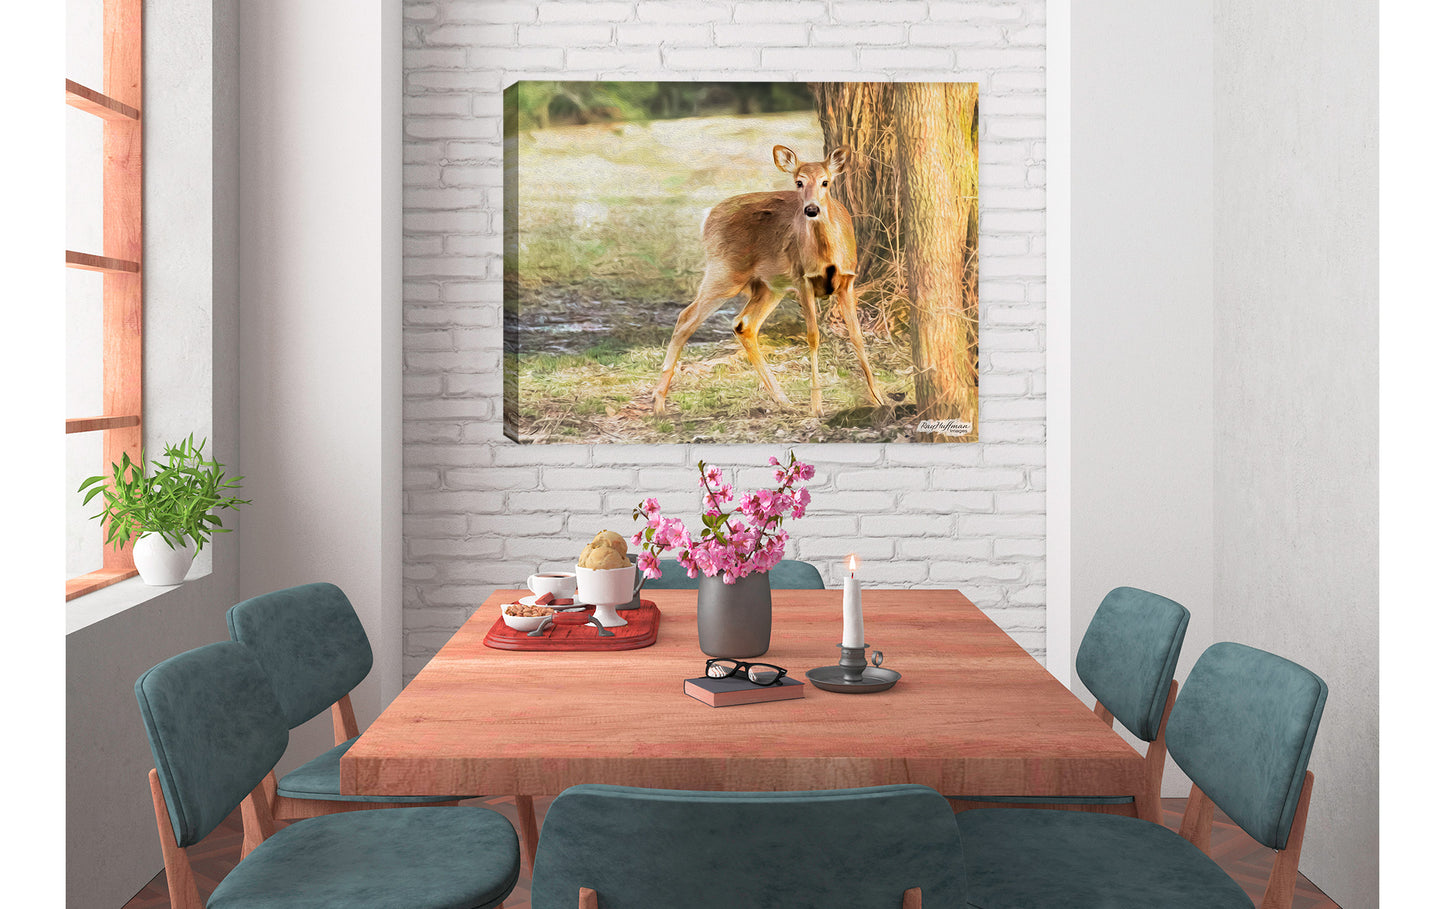 Deer Painting in Dining Room